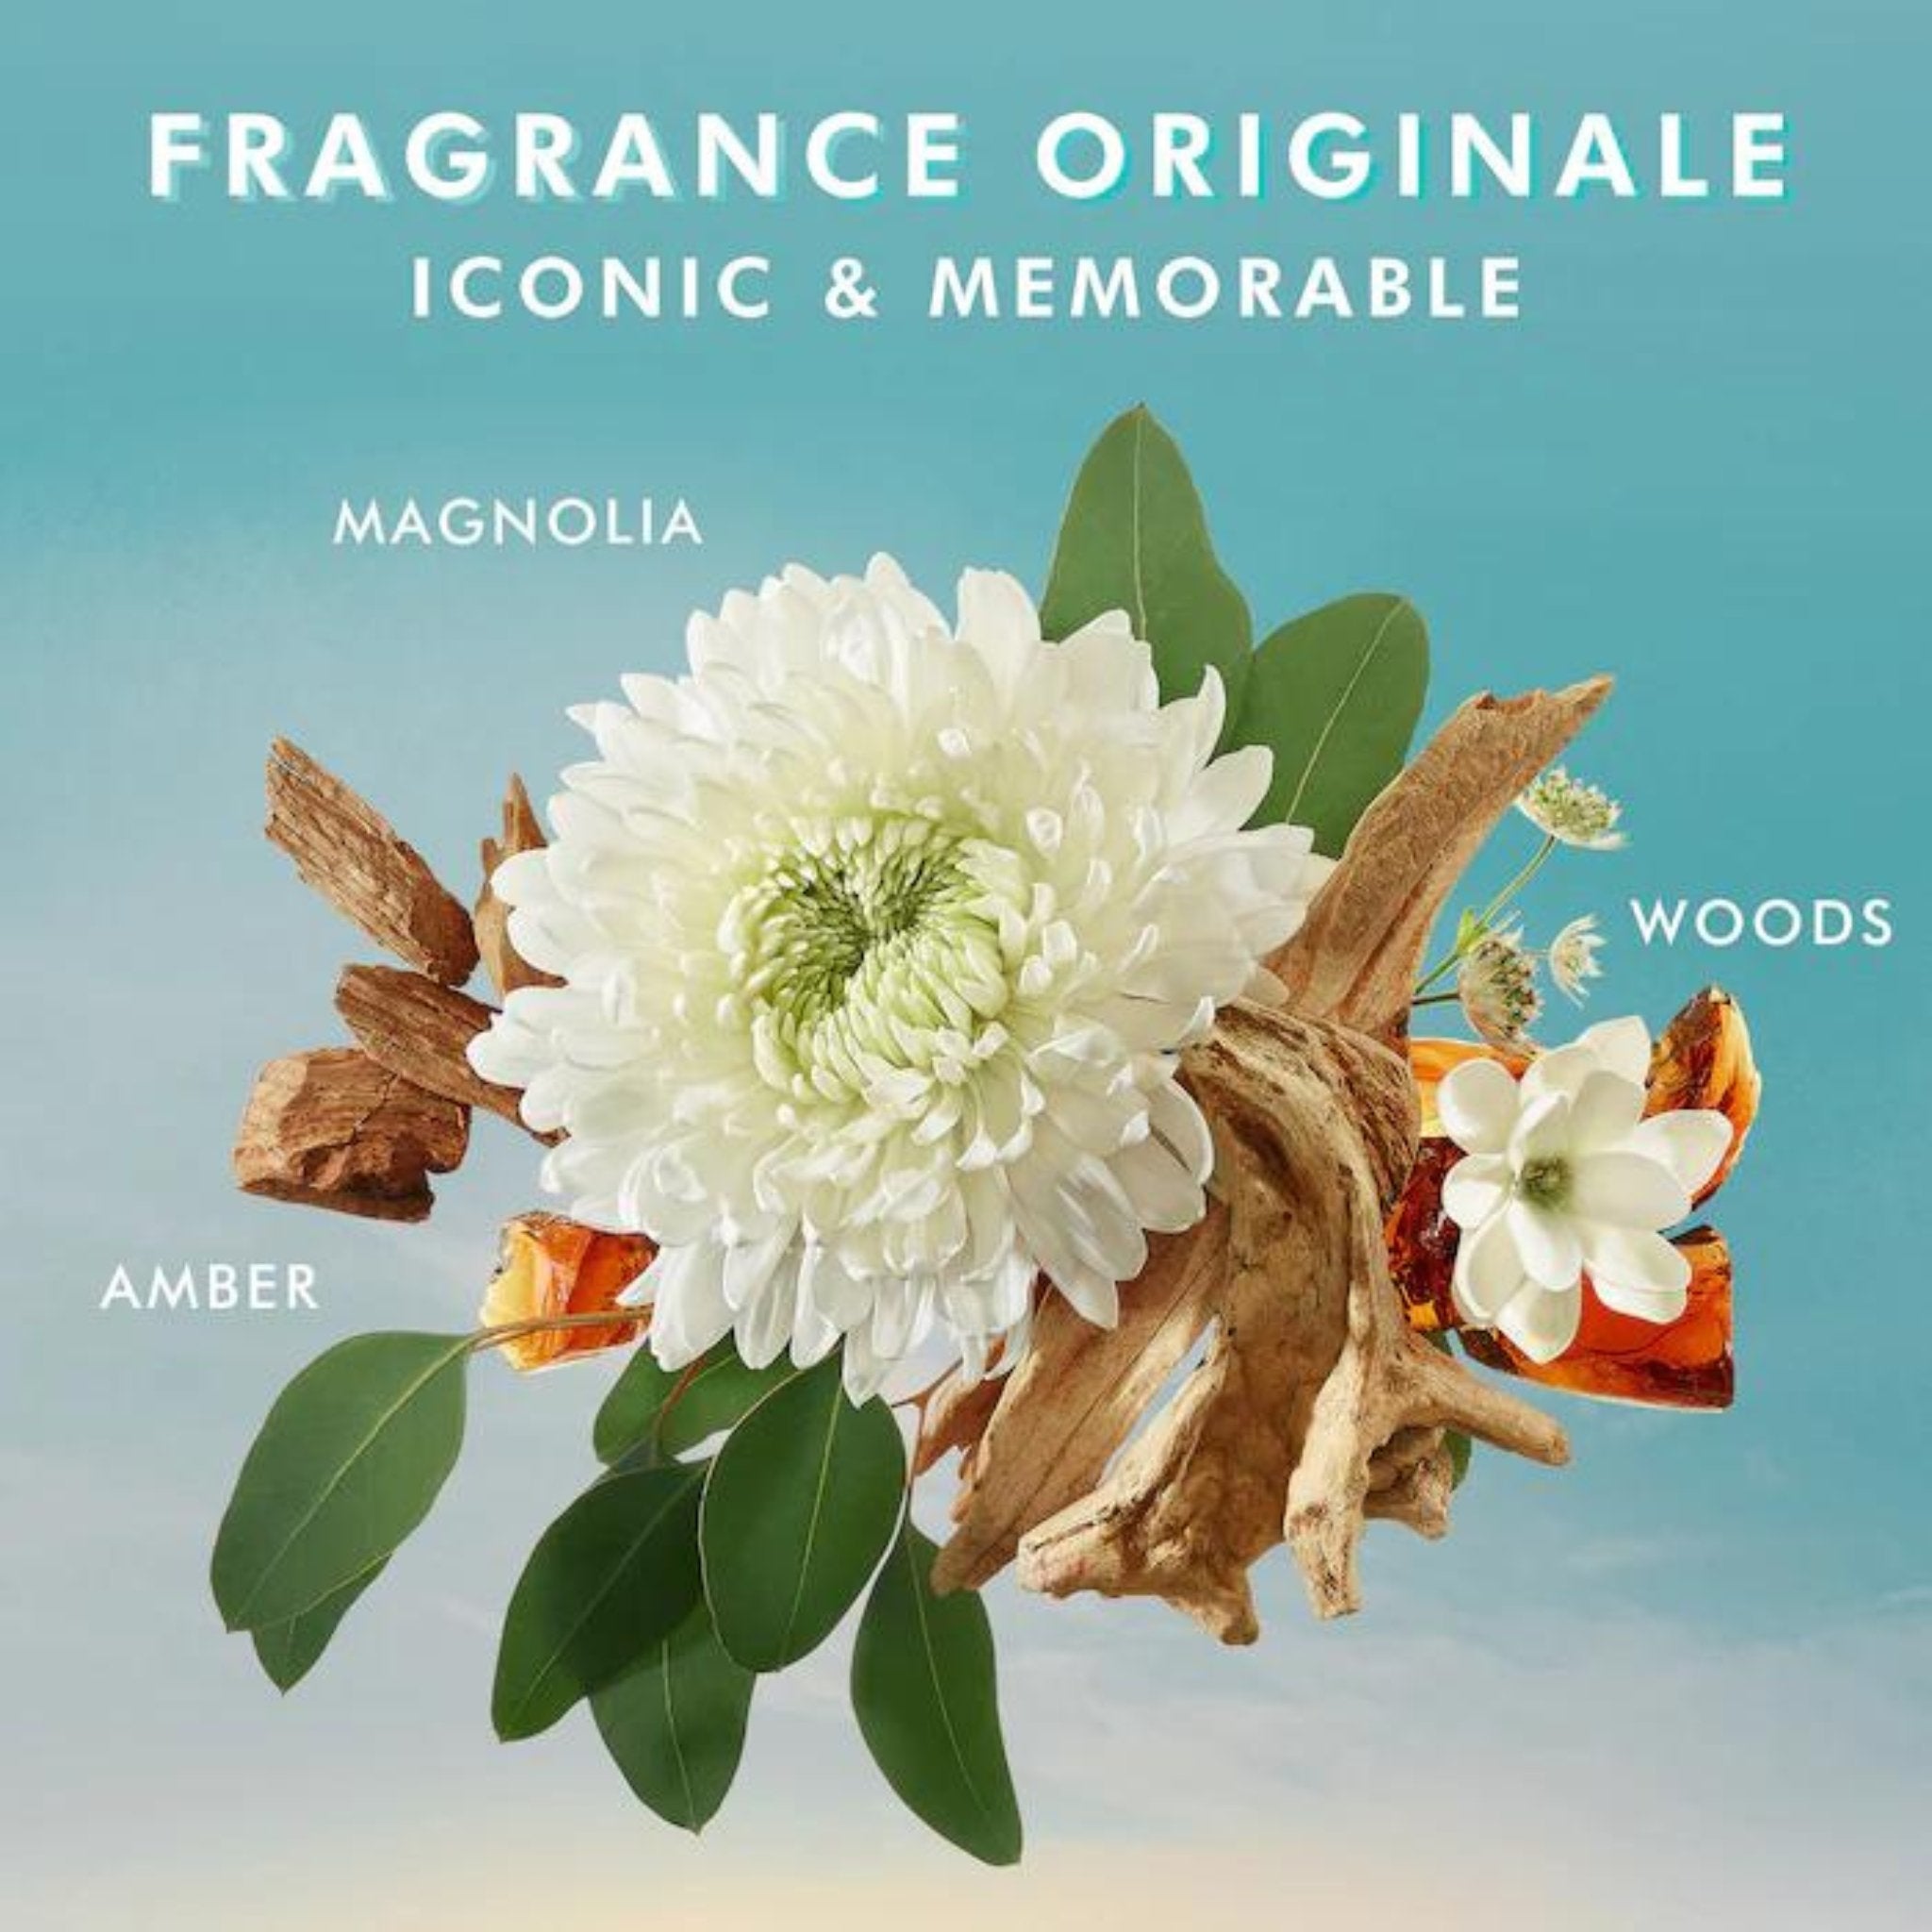 Moroccanoil. Lotion Pour le Corps Fragrance Originale - 360 ml - Concept C. Shop